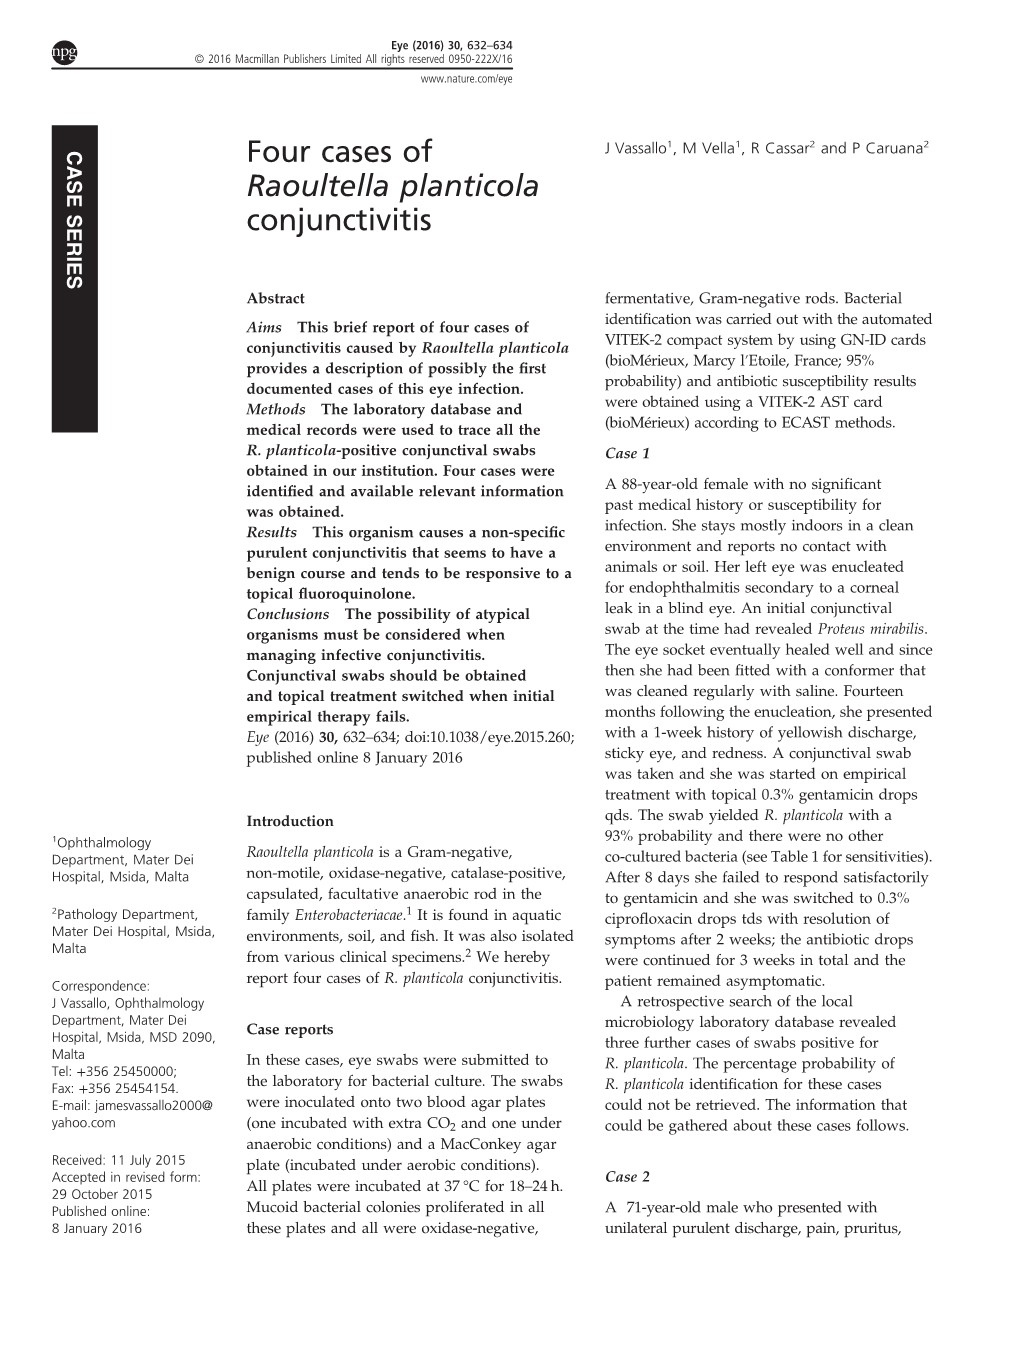 Four Cases of Raoultella Planticola Conjunctivitis